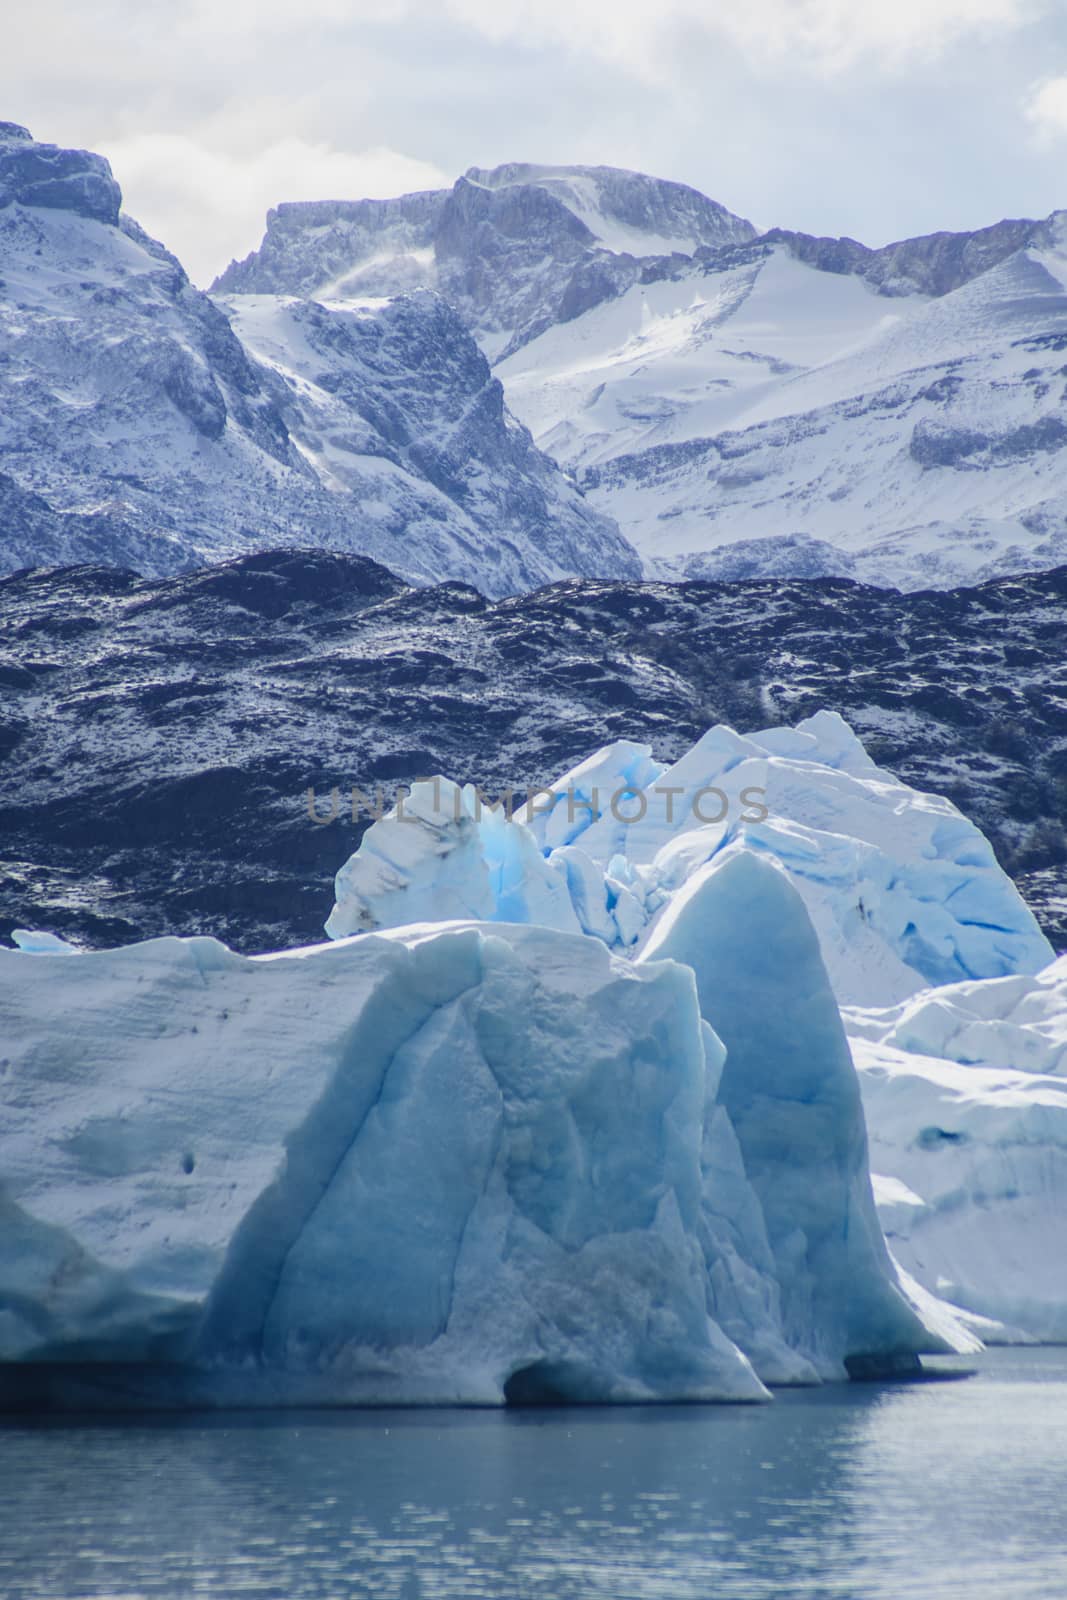 Iceberg in Lago Argentina, Near Calafate, Argentina